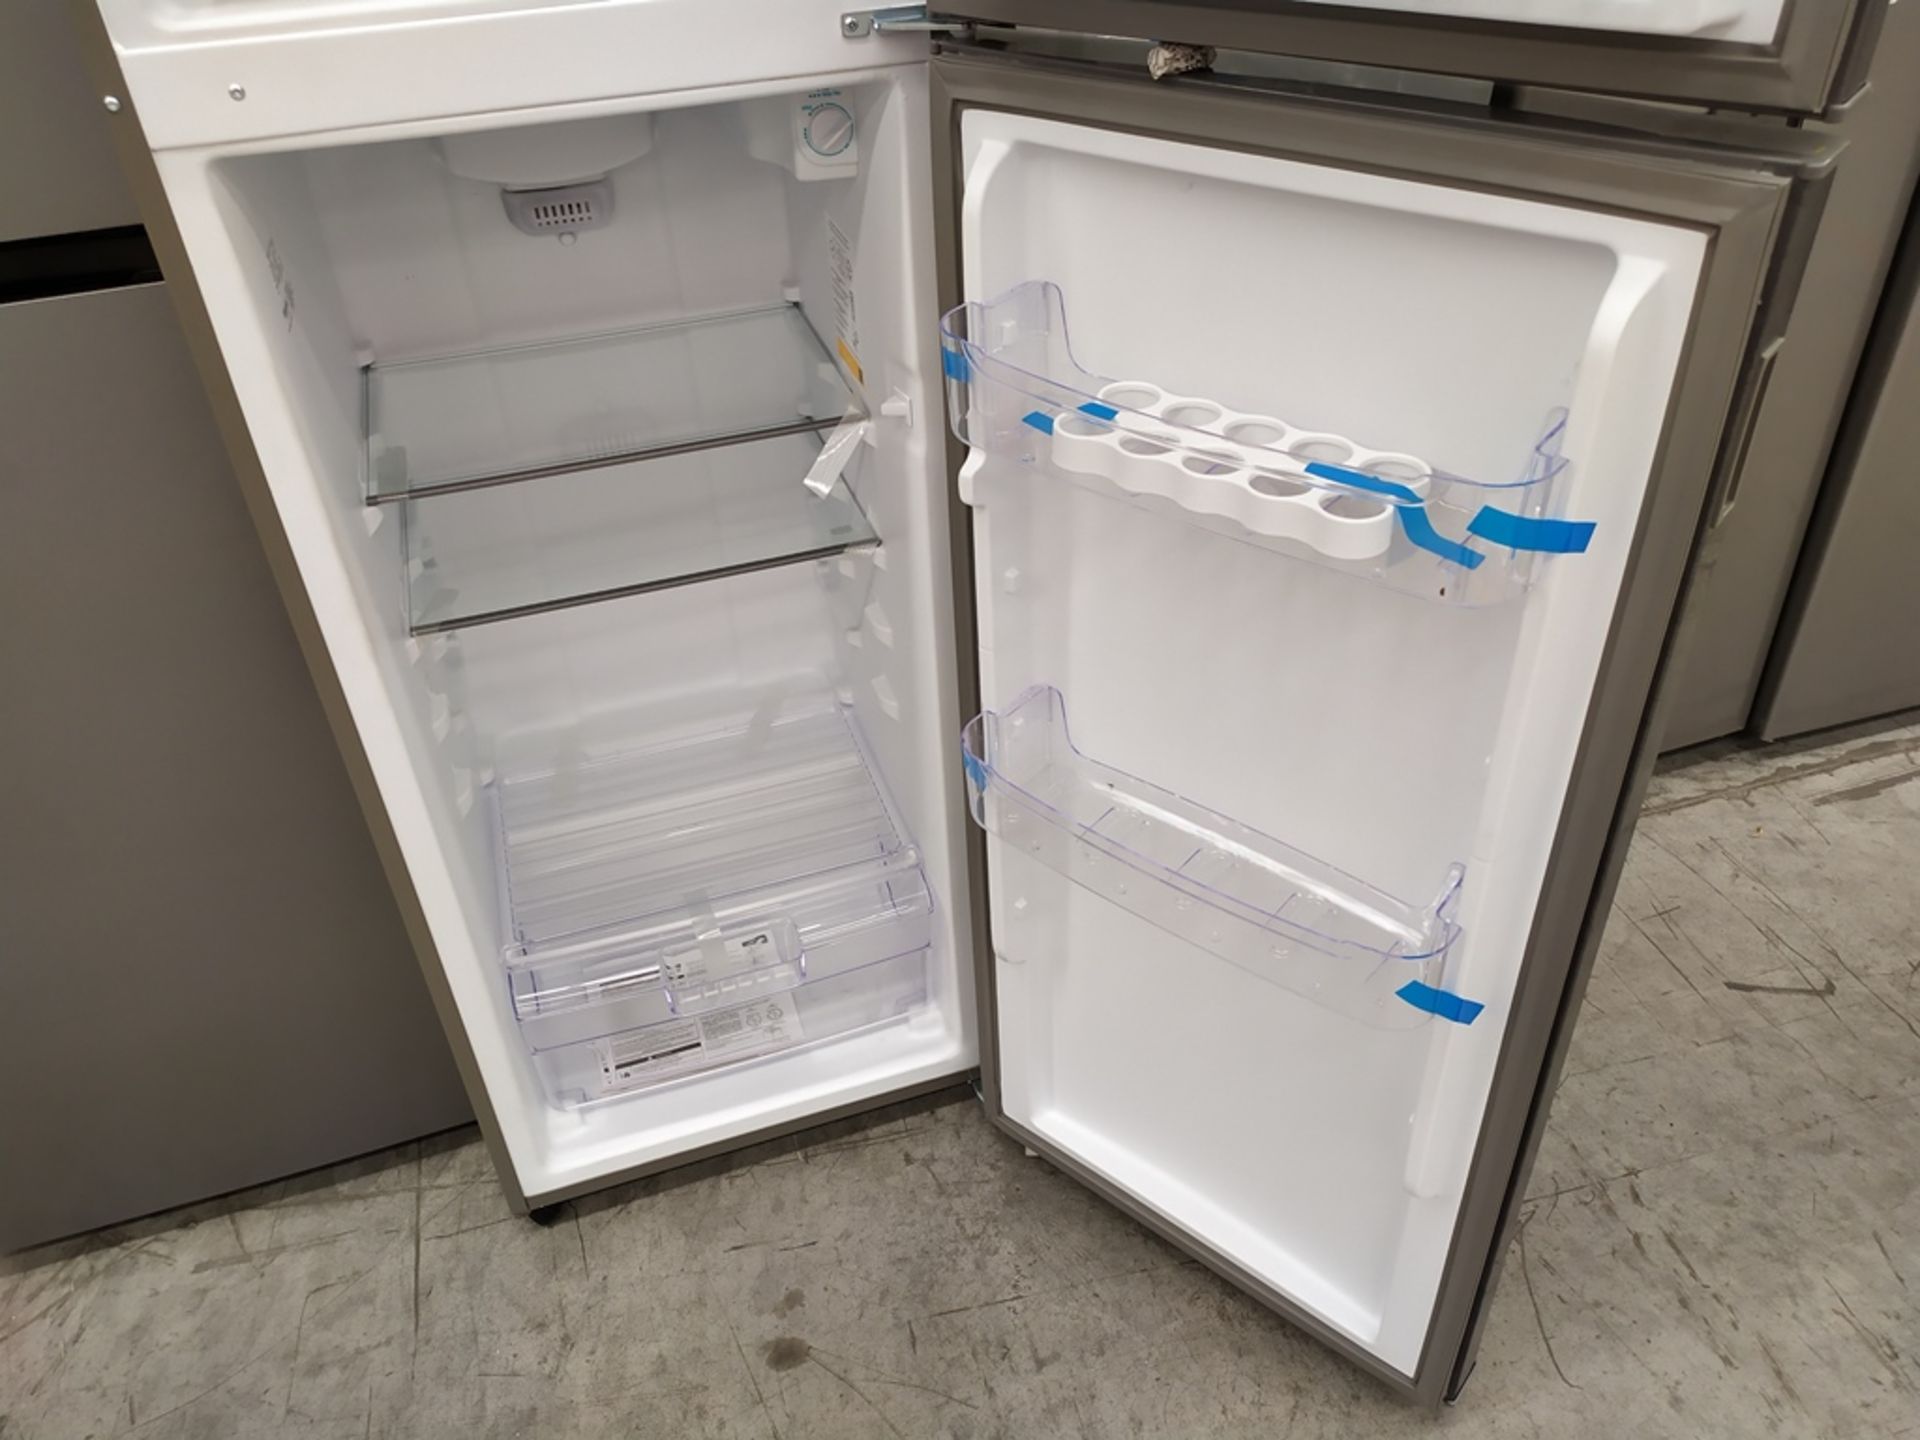 Refrigerador marca Acros, Modelo AT091FG, Serie 1792871, Color Gris, Golpeado, LB-750154563335 - Image 11 of 13